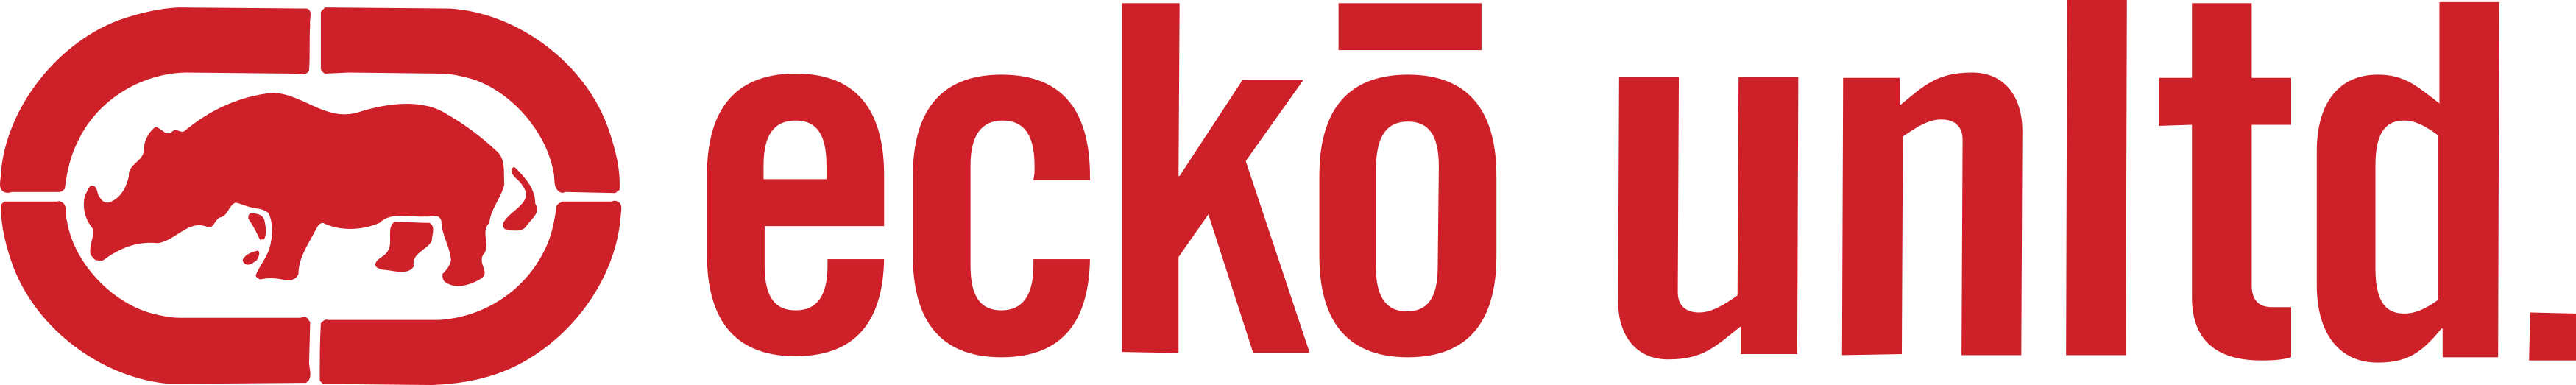 Ecko Unltd Logo - ecko Logo – ecko unltd Logo - PNG e Vetor - Download de Logotipos